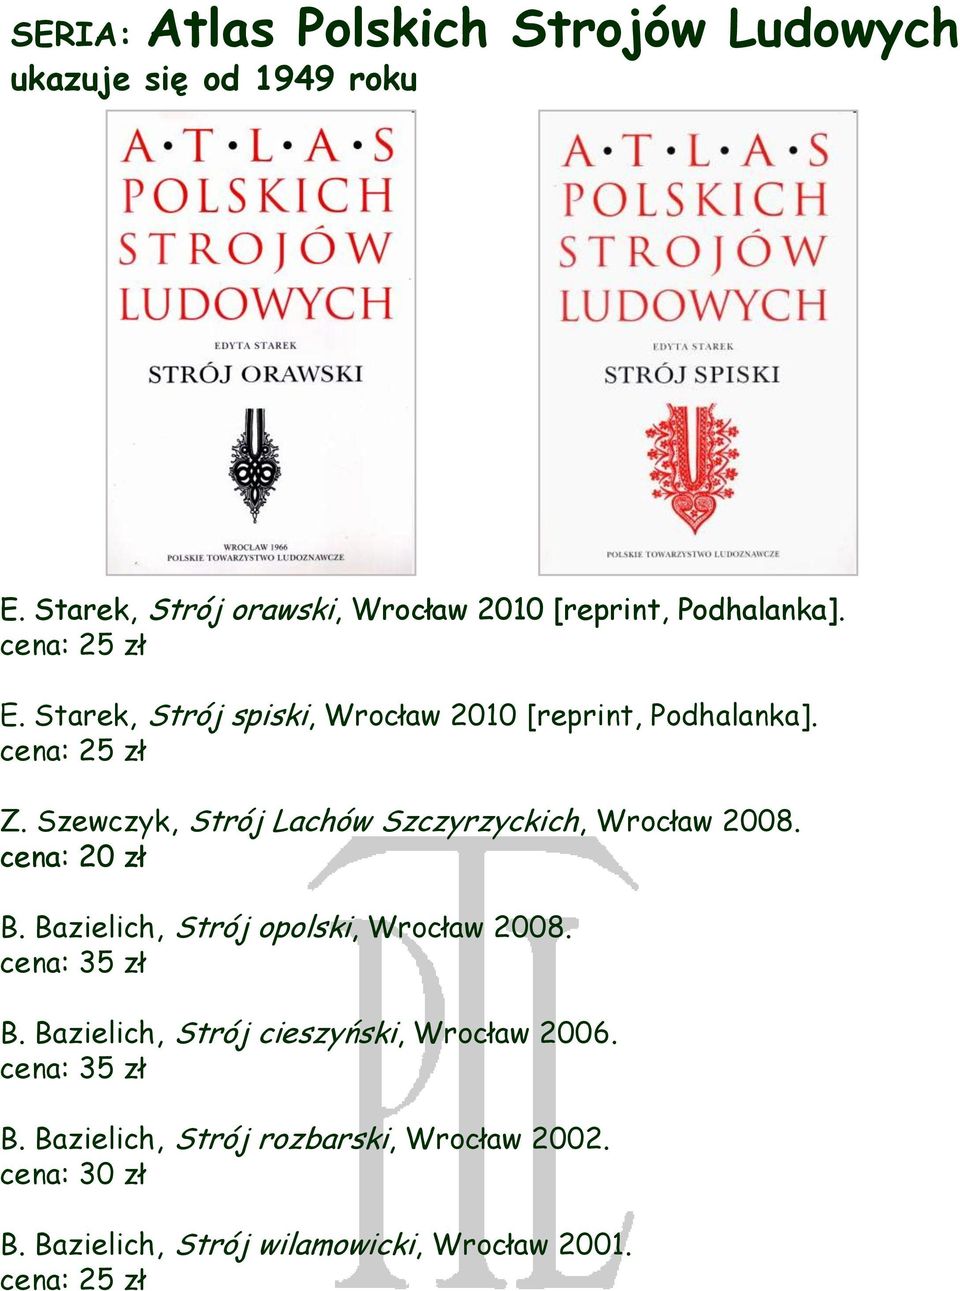 Starek, Strój spiski, Wrocław 2010 [reprint, Podhalanka]. Z. Szewczyk, Strój Lachów Szczyrzyckich, Wrocław 2008.